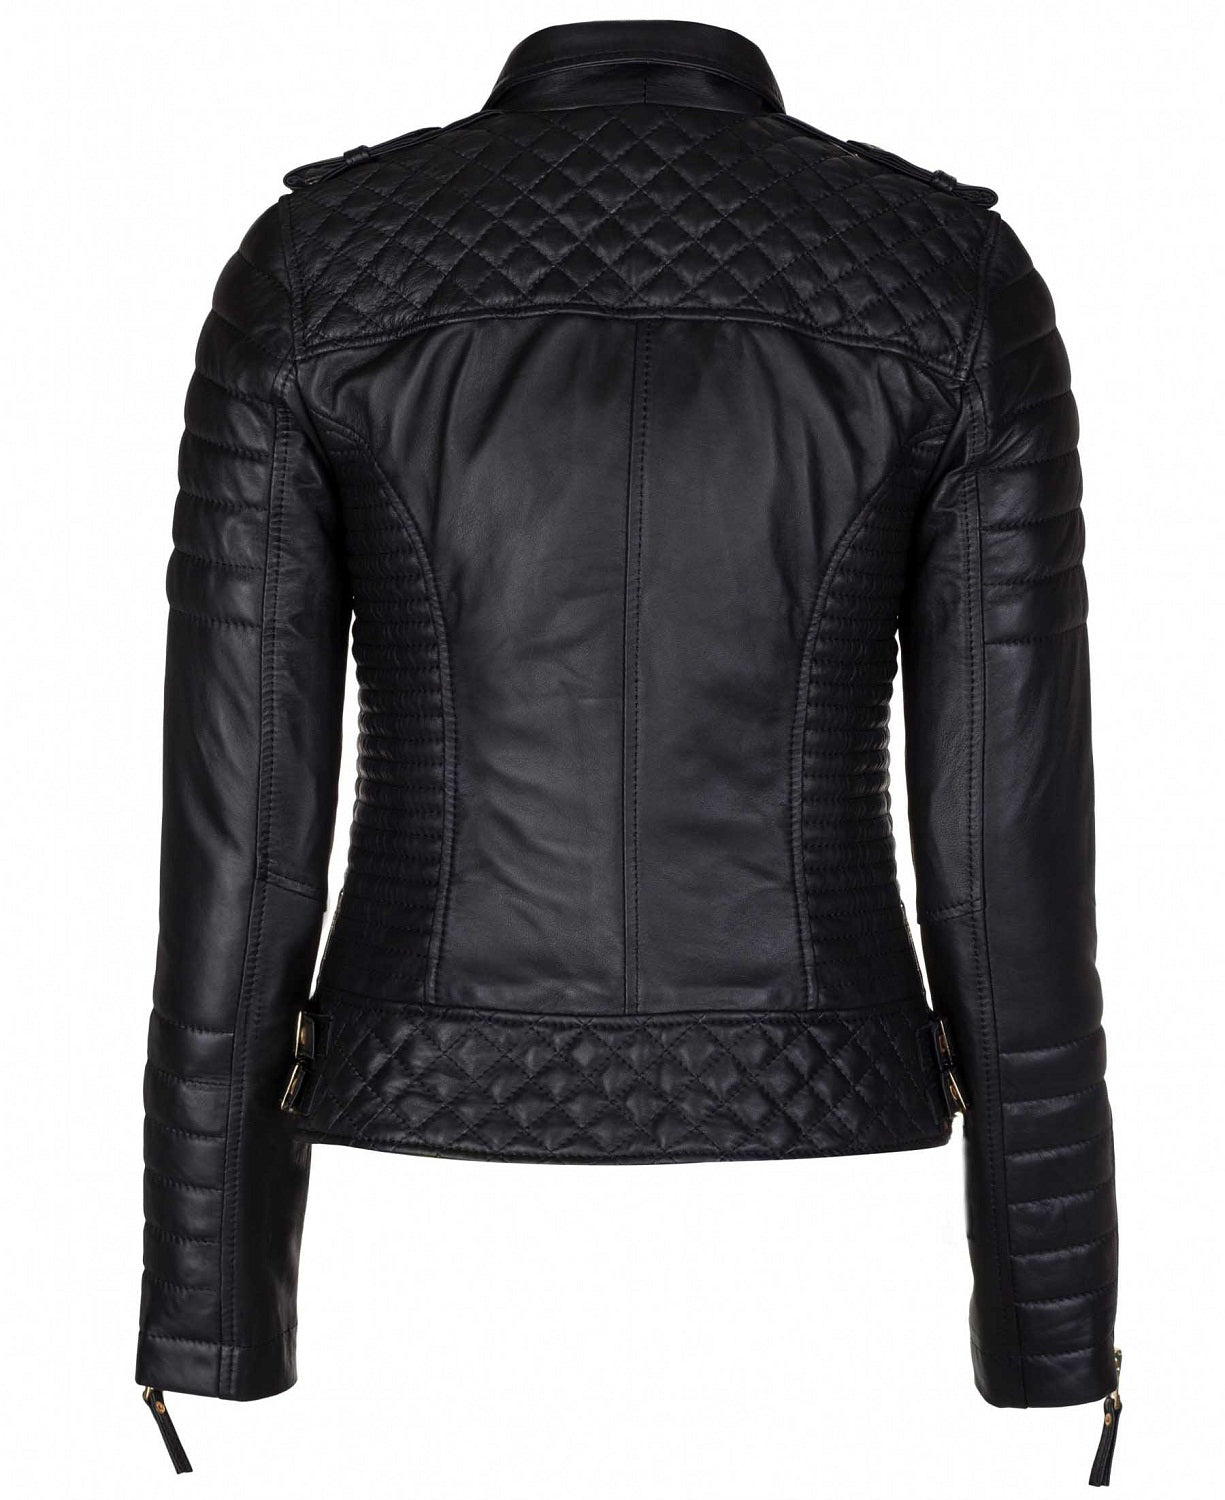 Women's Biker Leather Jacket Black Gold Zipper SkinOutfit